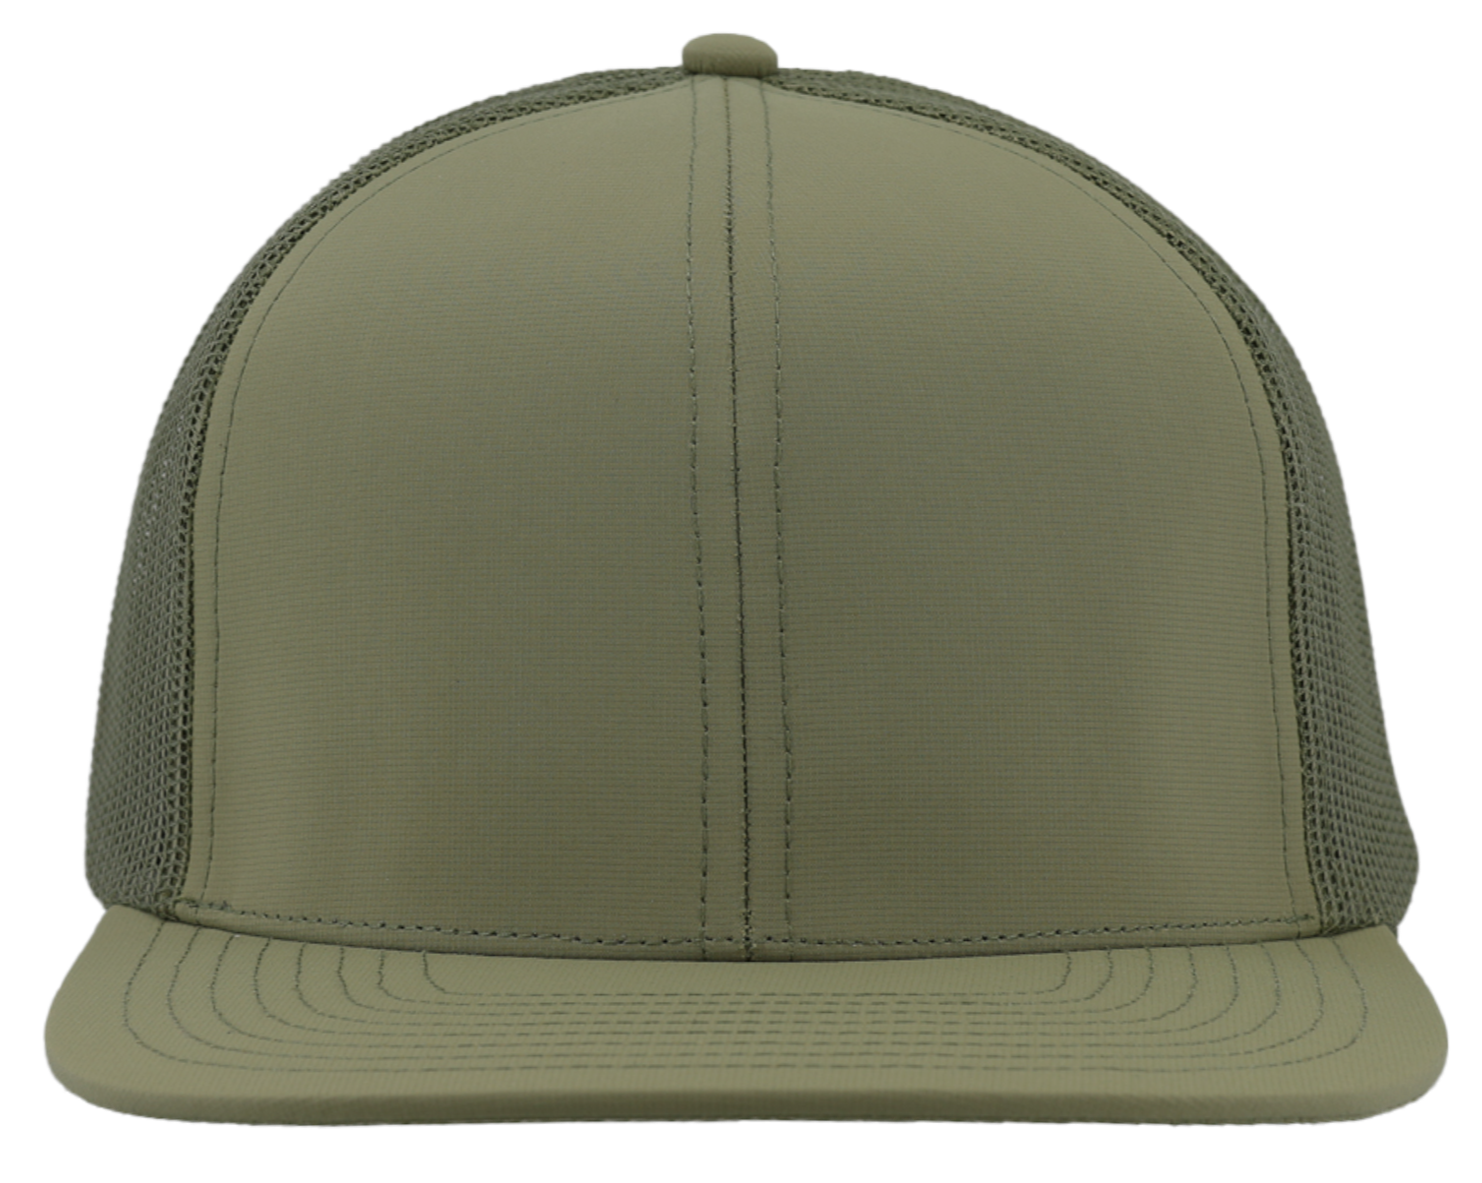 GENERAL-Custom hat-Flatbill-Snapback-Loden- Zapped Headwear